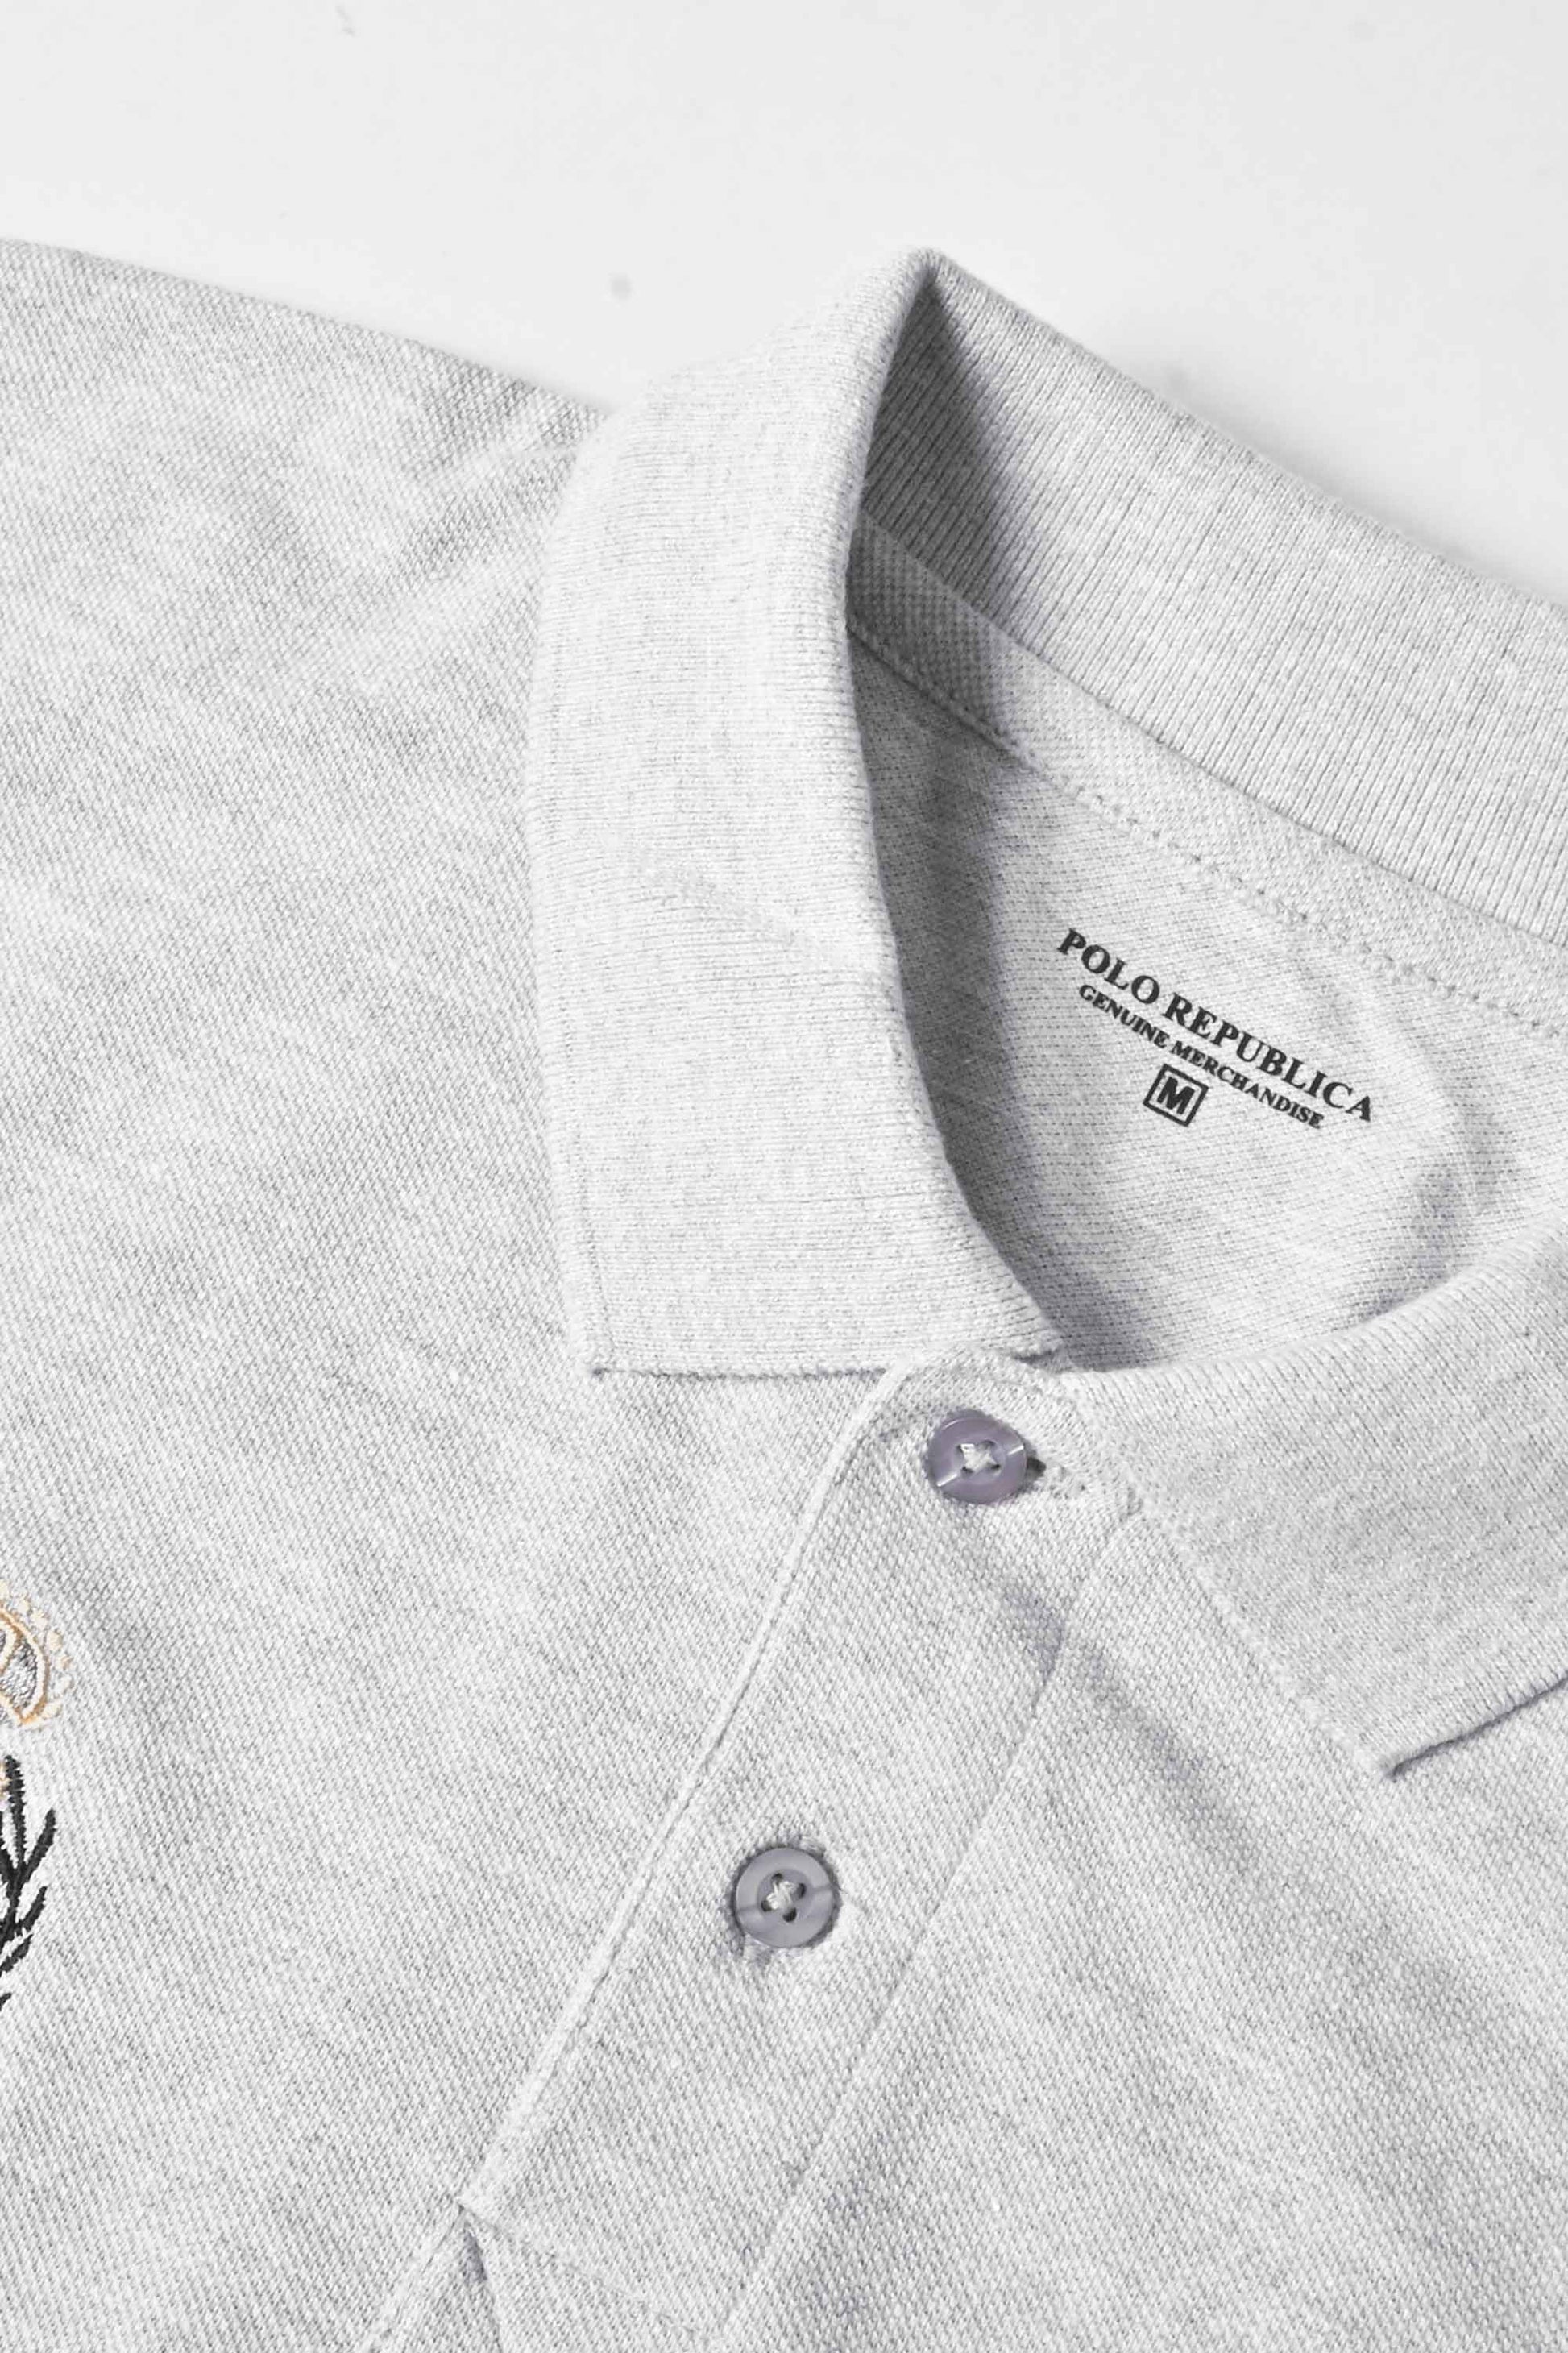 Polo Republica Men's Polo Cavalry & Crest Embroidered Short Sleeve Polo Shirt Men's Polo Shirt Polo Republica 